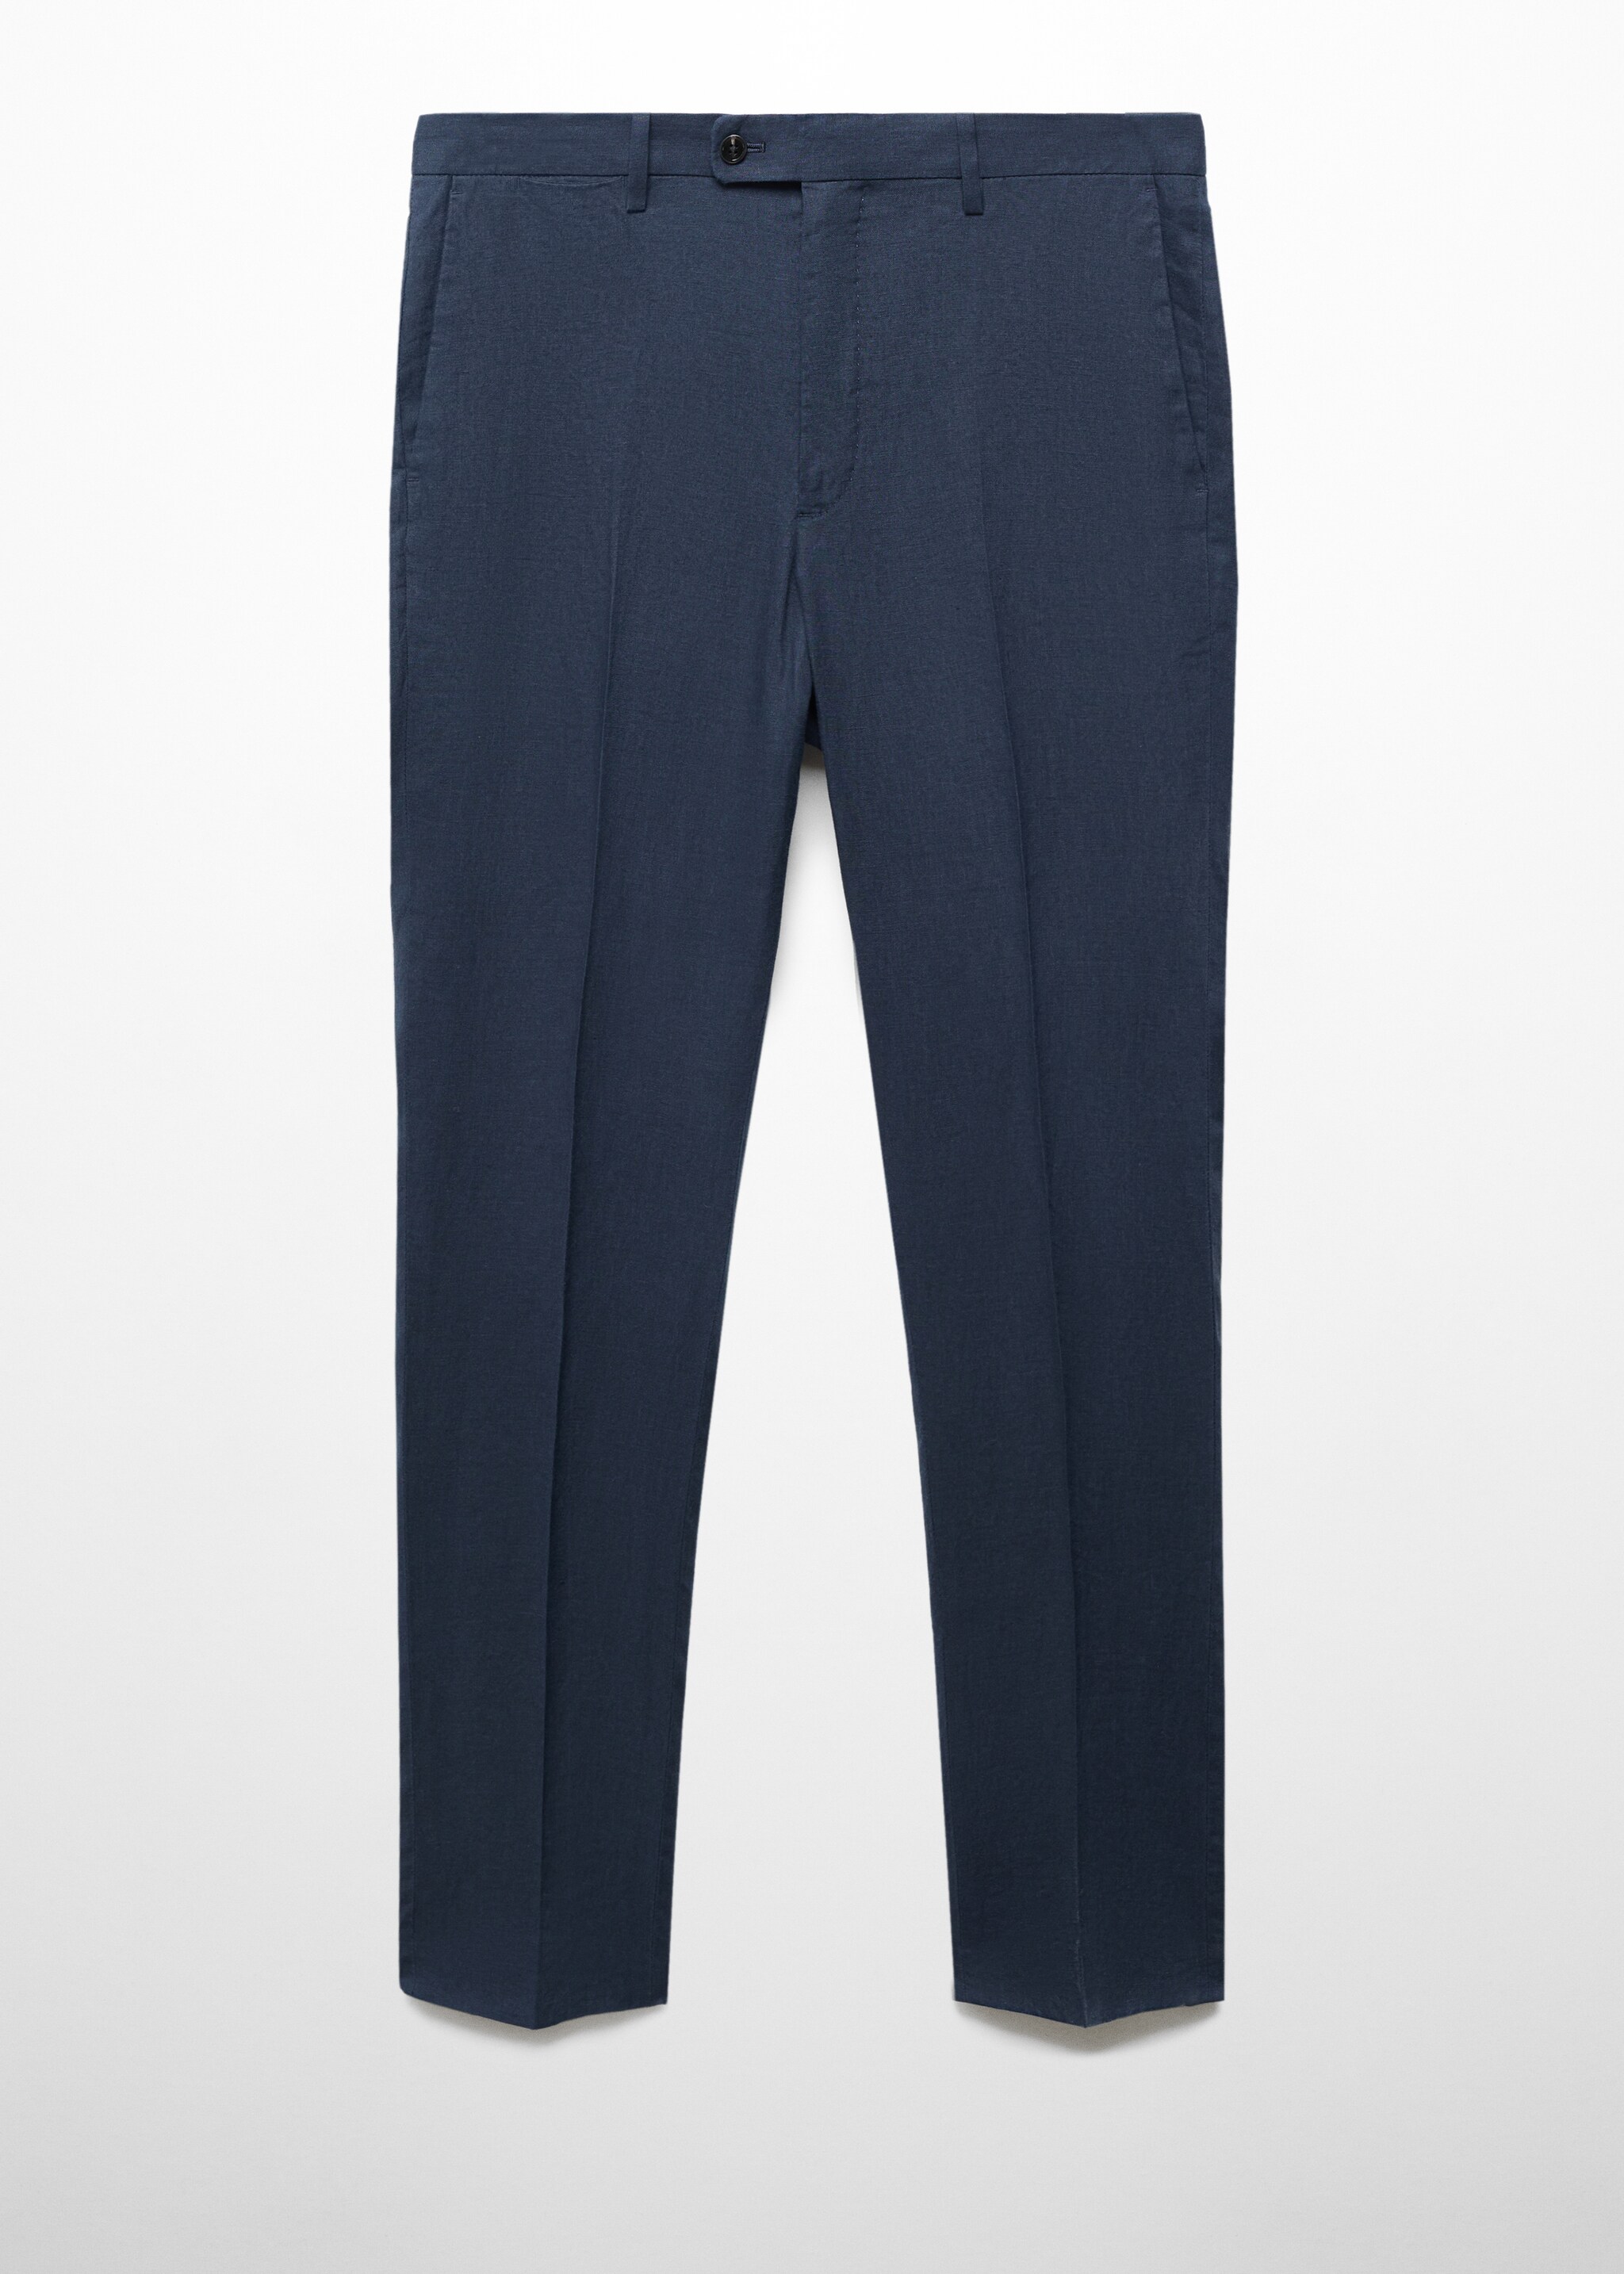 Pantalón traje slim fit 100% lino - Artículo sin modelo